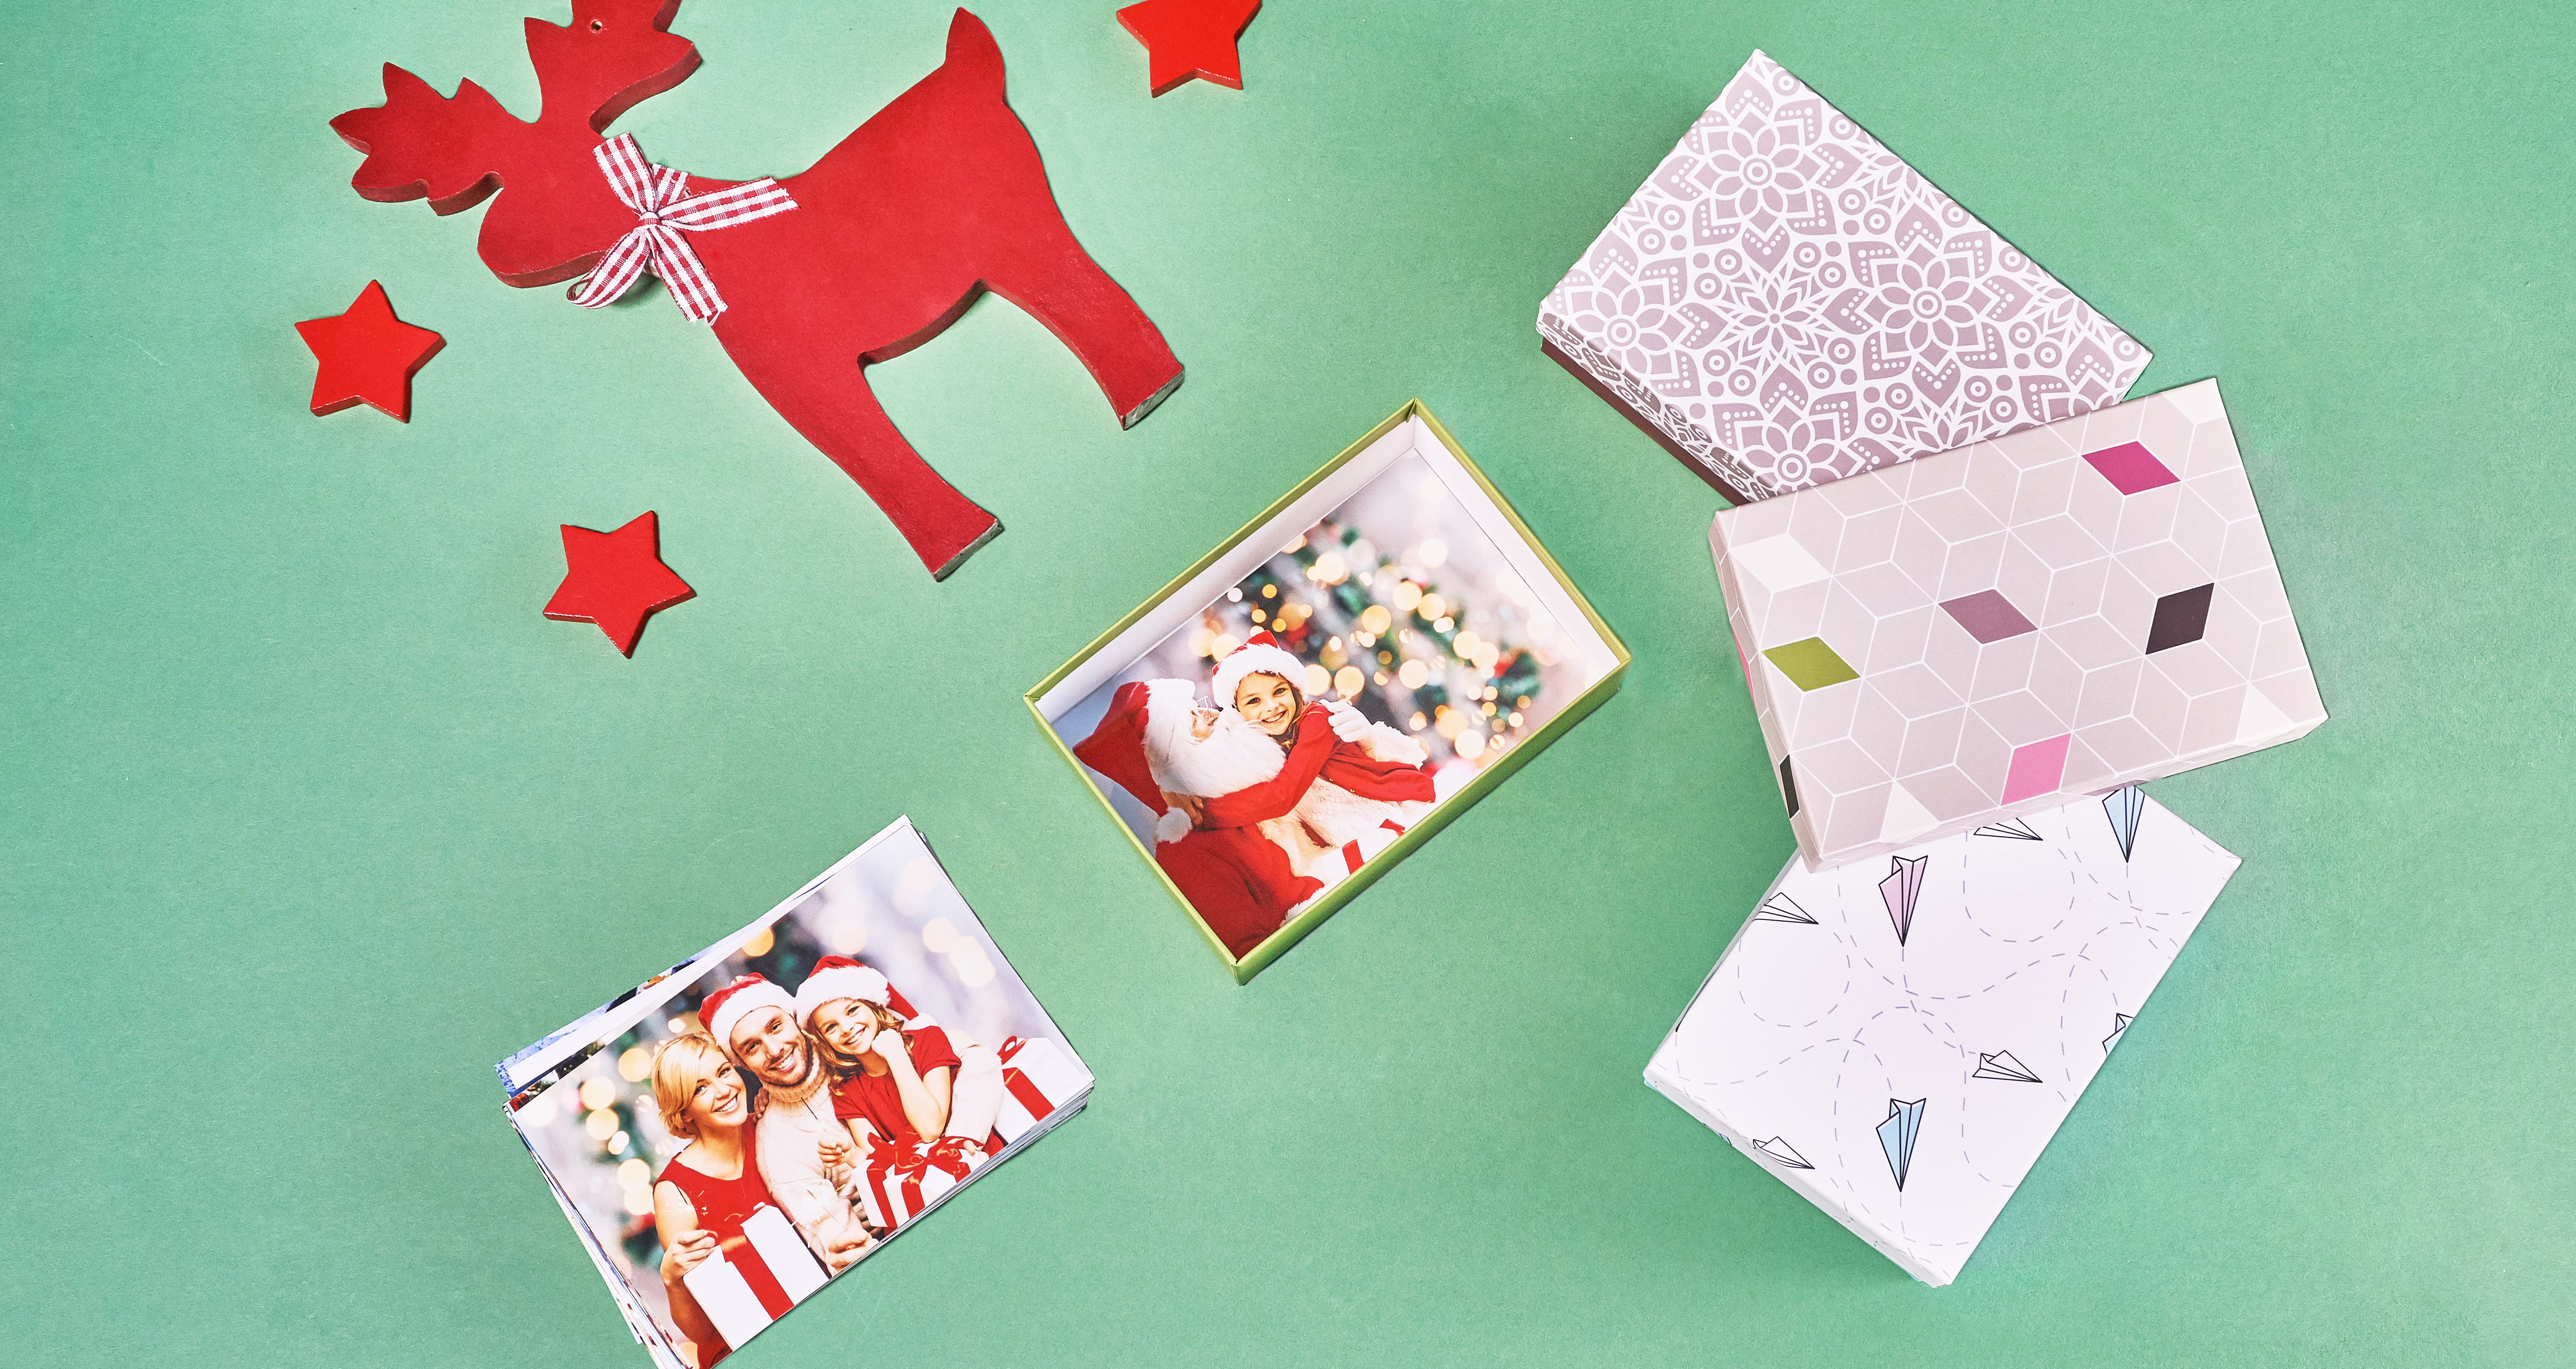 Fotoabzüge Classic in einer dekorativen Geschenkverpackung und aufgestapelte Fotoabzüge, rechts dekorative Bilderboxen, rote Holzfigur Rentier und Sterne auf grünem Hintergrund.